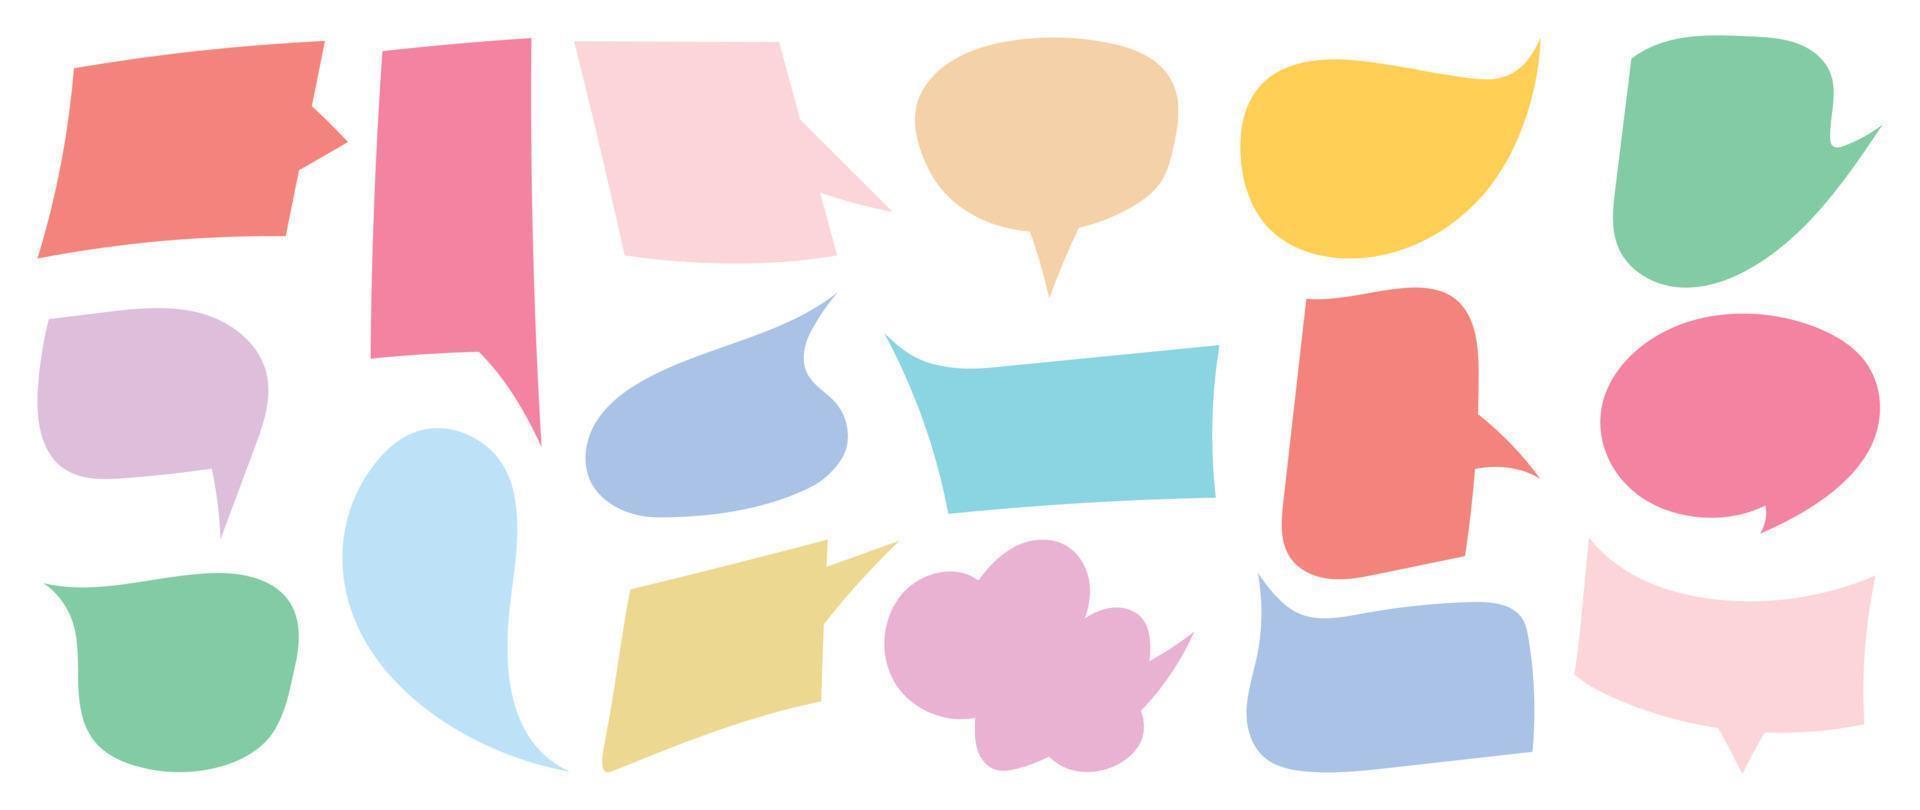 Satz von Leerzeichen pastellfarbener Sprechblasenvektor. Sammlung von Dialogen, Reden, Reden, Denken, Wolken, angekündigten leeren Sprechblasen. design für comic-text, aufkleber, banner, chat-symbol. vektor